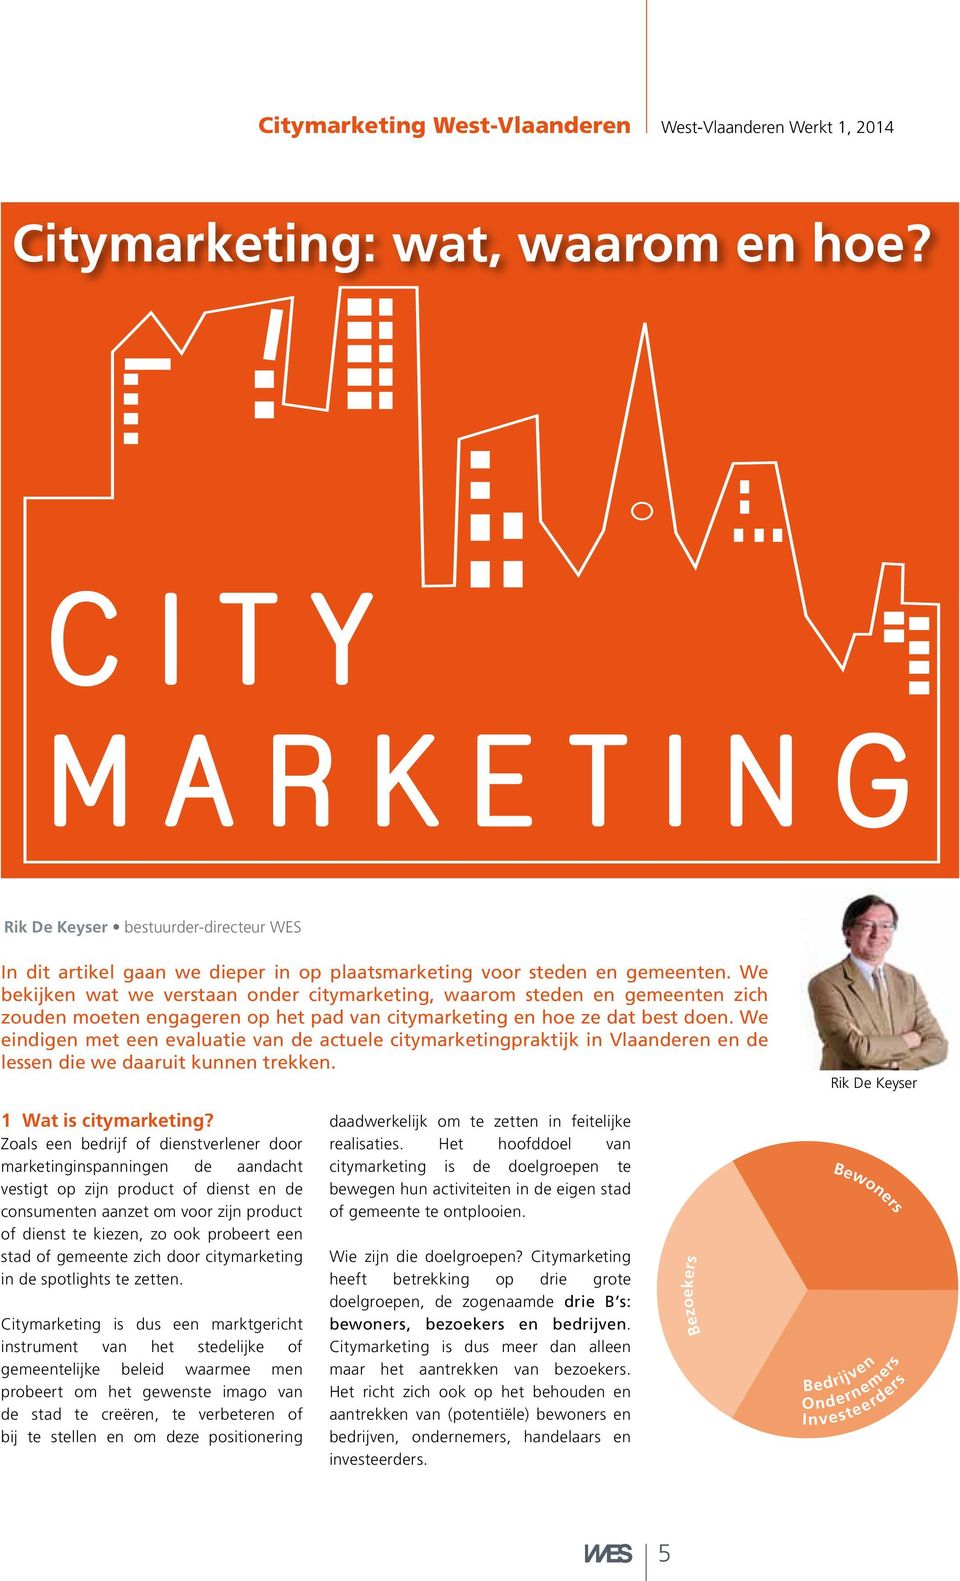 We bekijken wat we verstaan onder citymarketing, waarom steden en gemeenten zich zouden moeten engageren op het pad van citymarketing en hoe ze dat best doen.